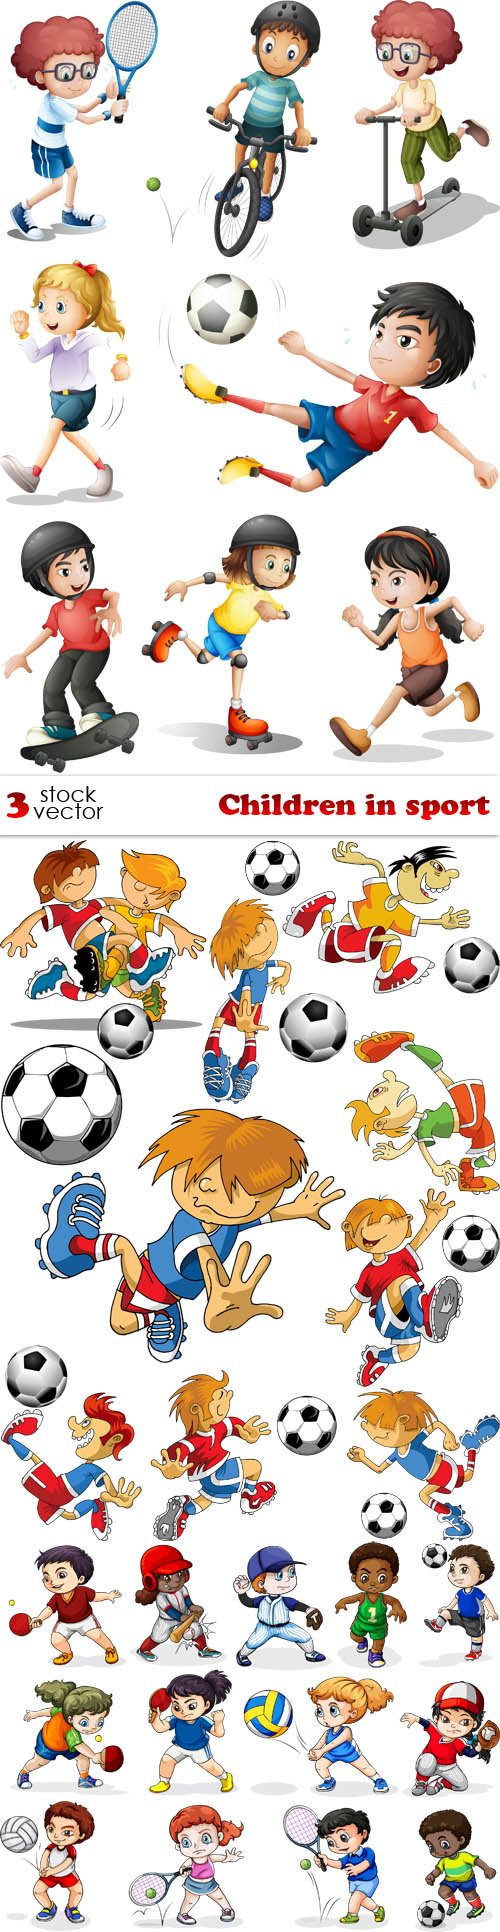 Vectors - Children in sport 3